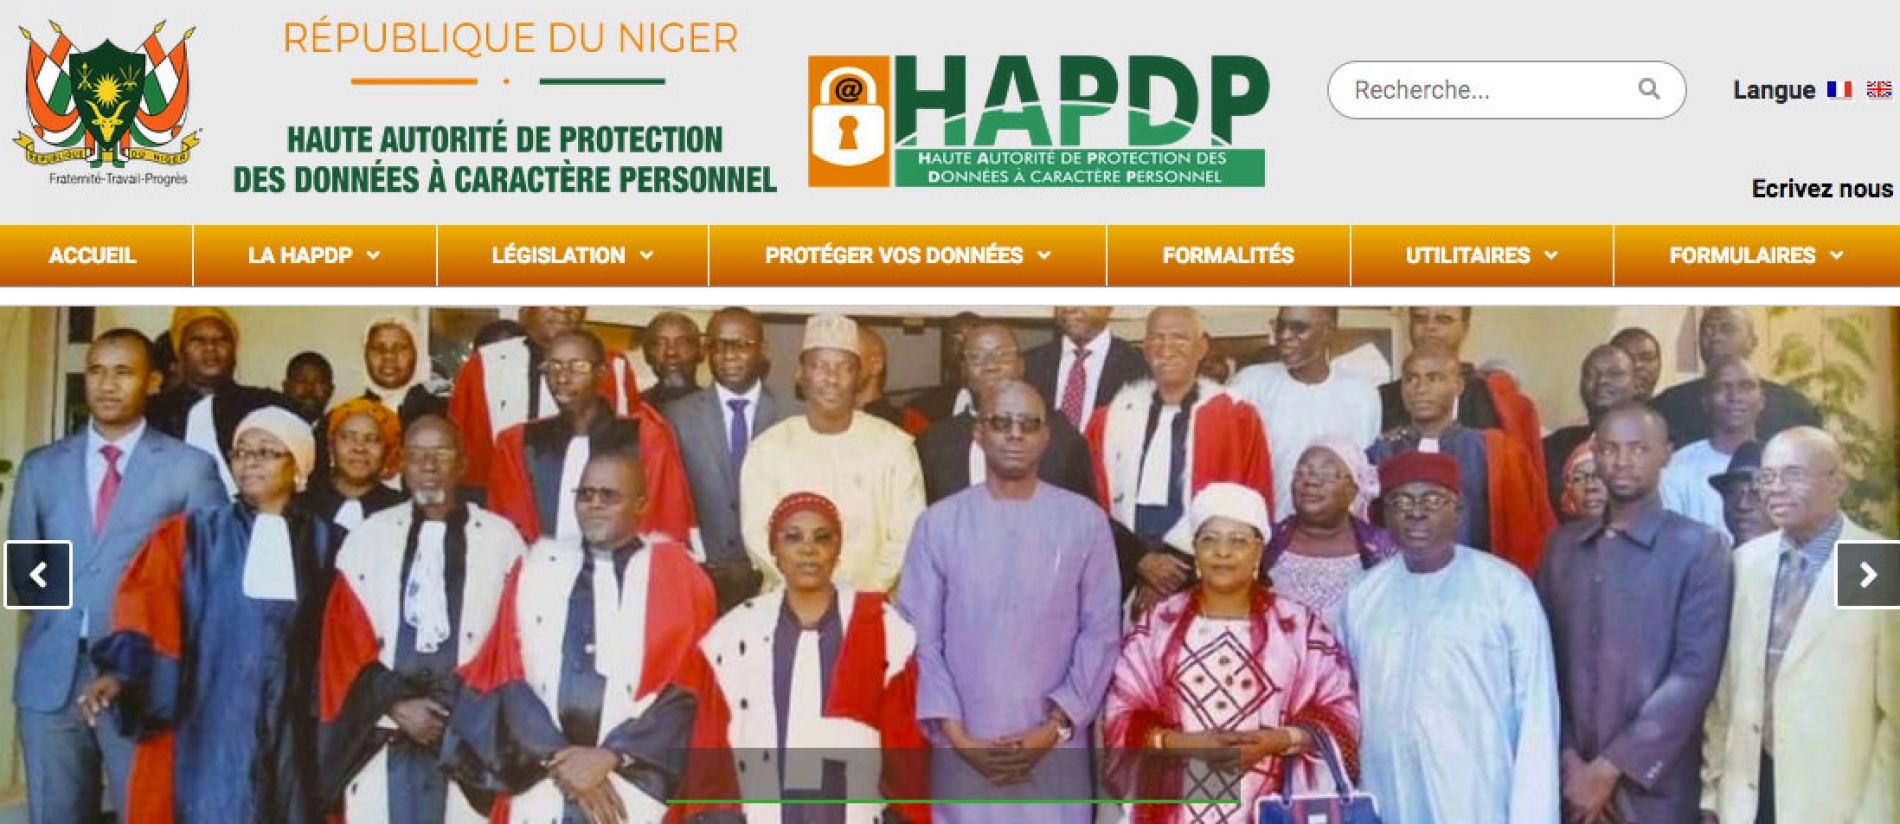 Lancement Officiel du Site Web de la Haute Autorité de Protection des Données à Caractère Personnel (HAPDP) : L’information et la sensibilisation avant le recours aux sanctions